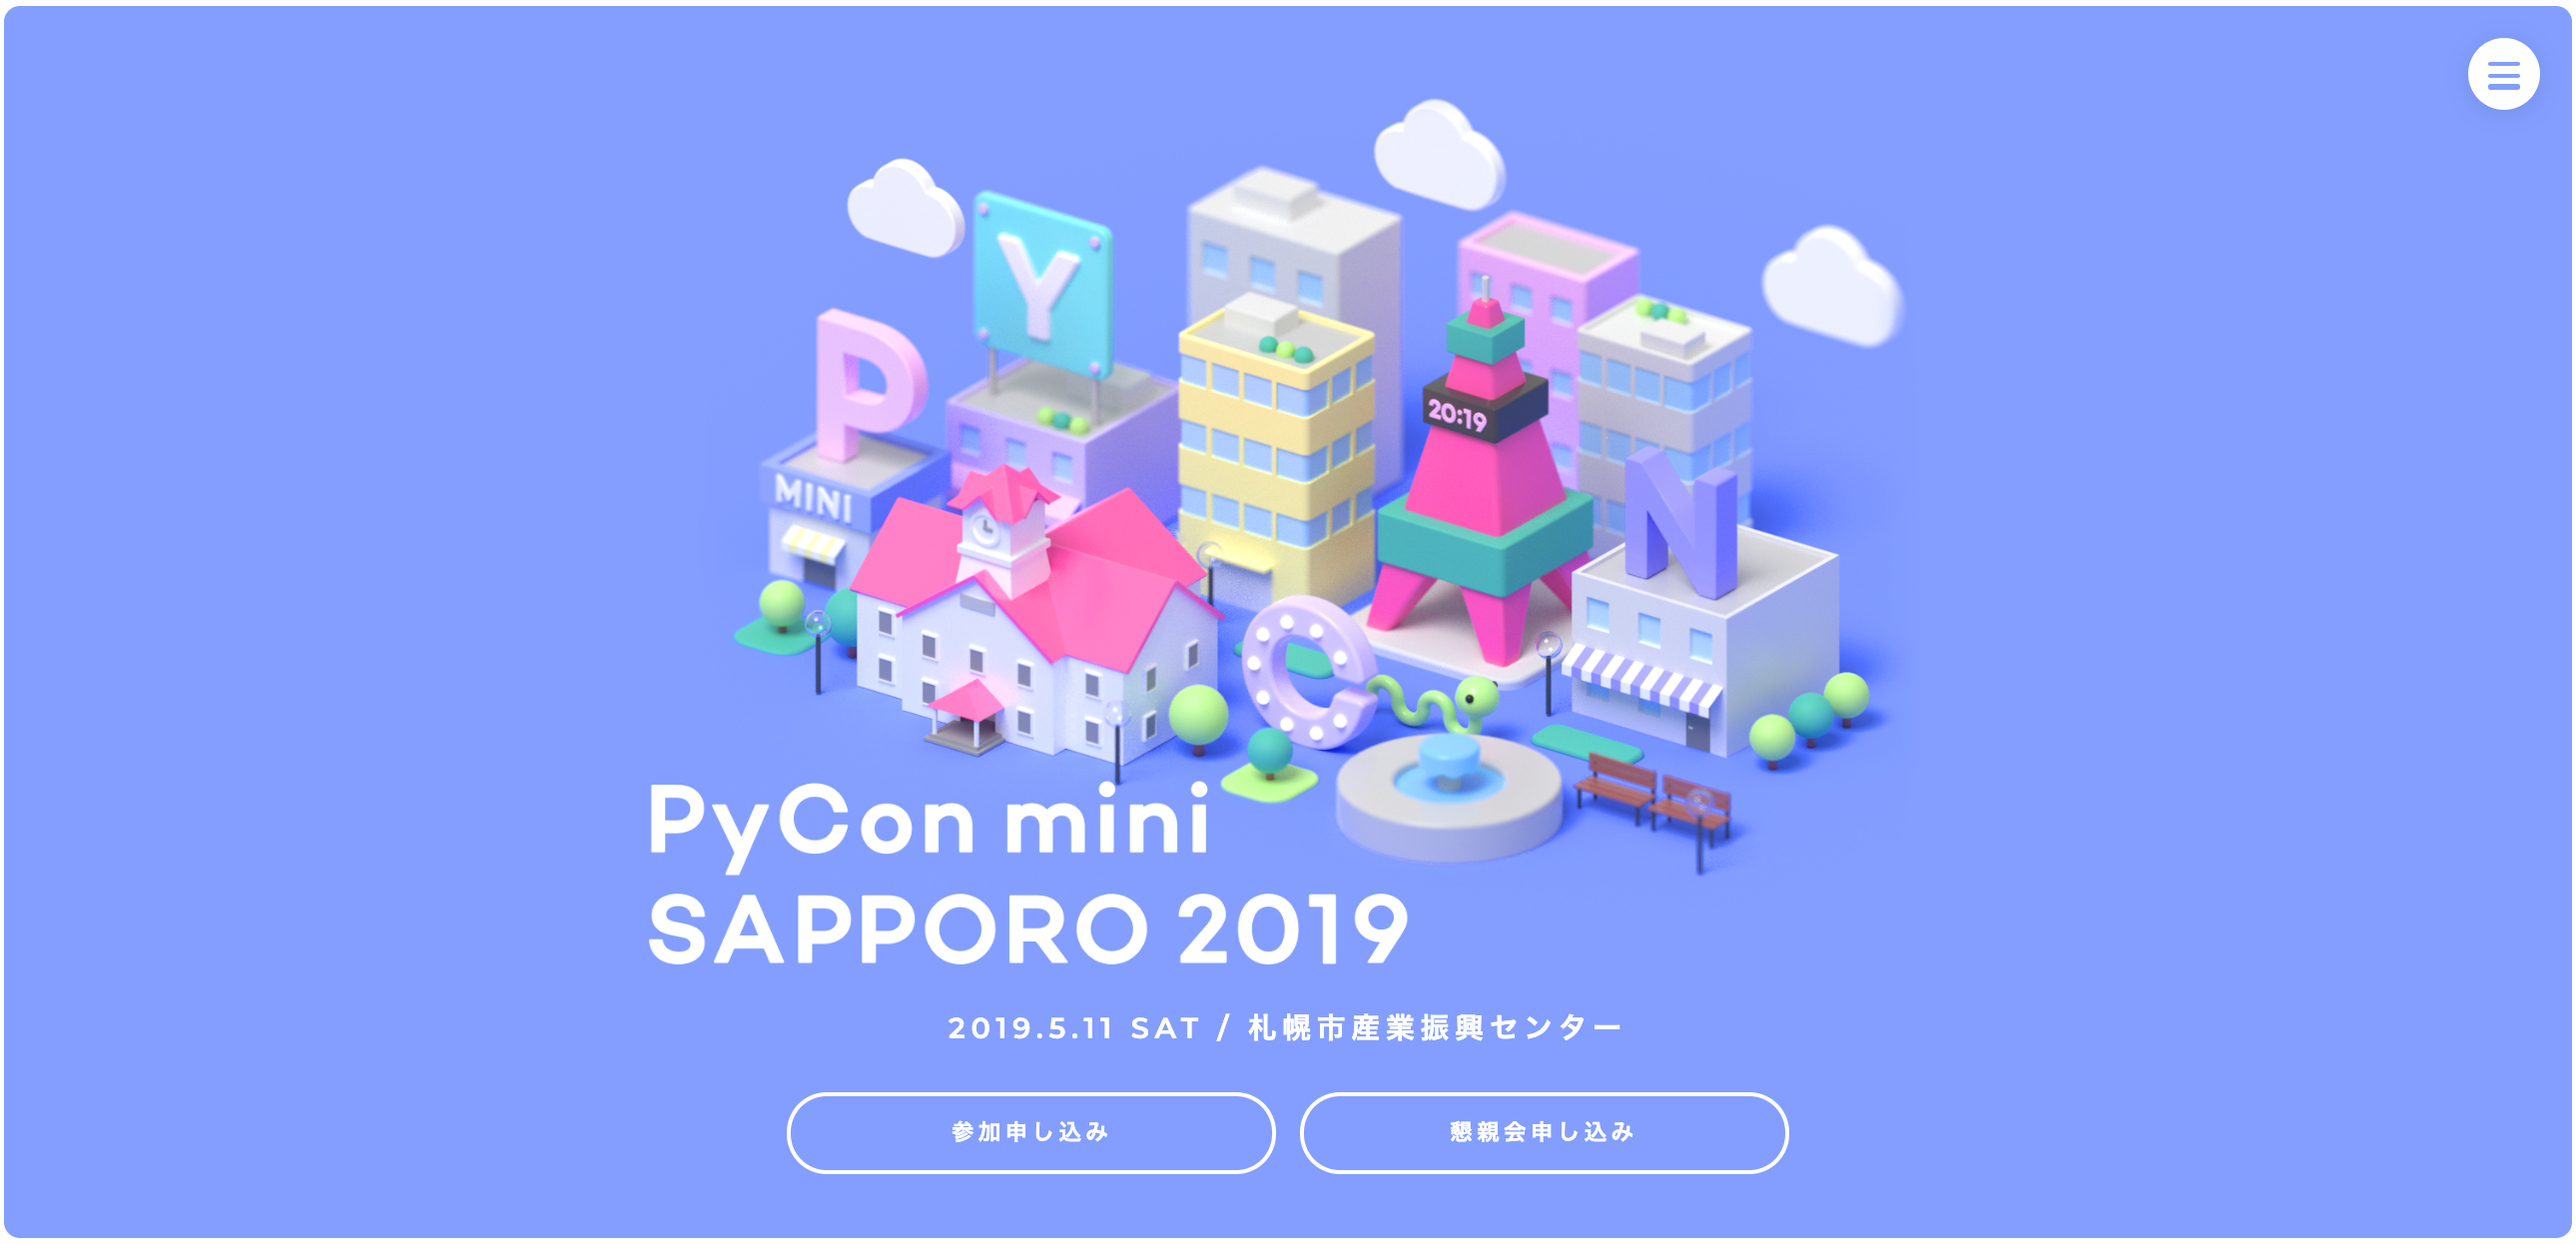 PyCon mini Sapporo 2019 サムネイル